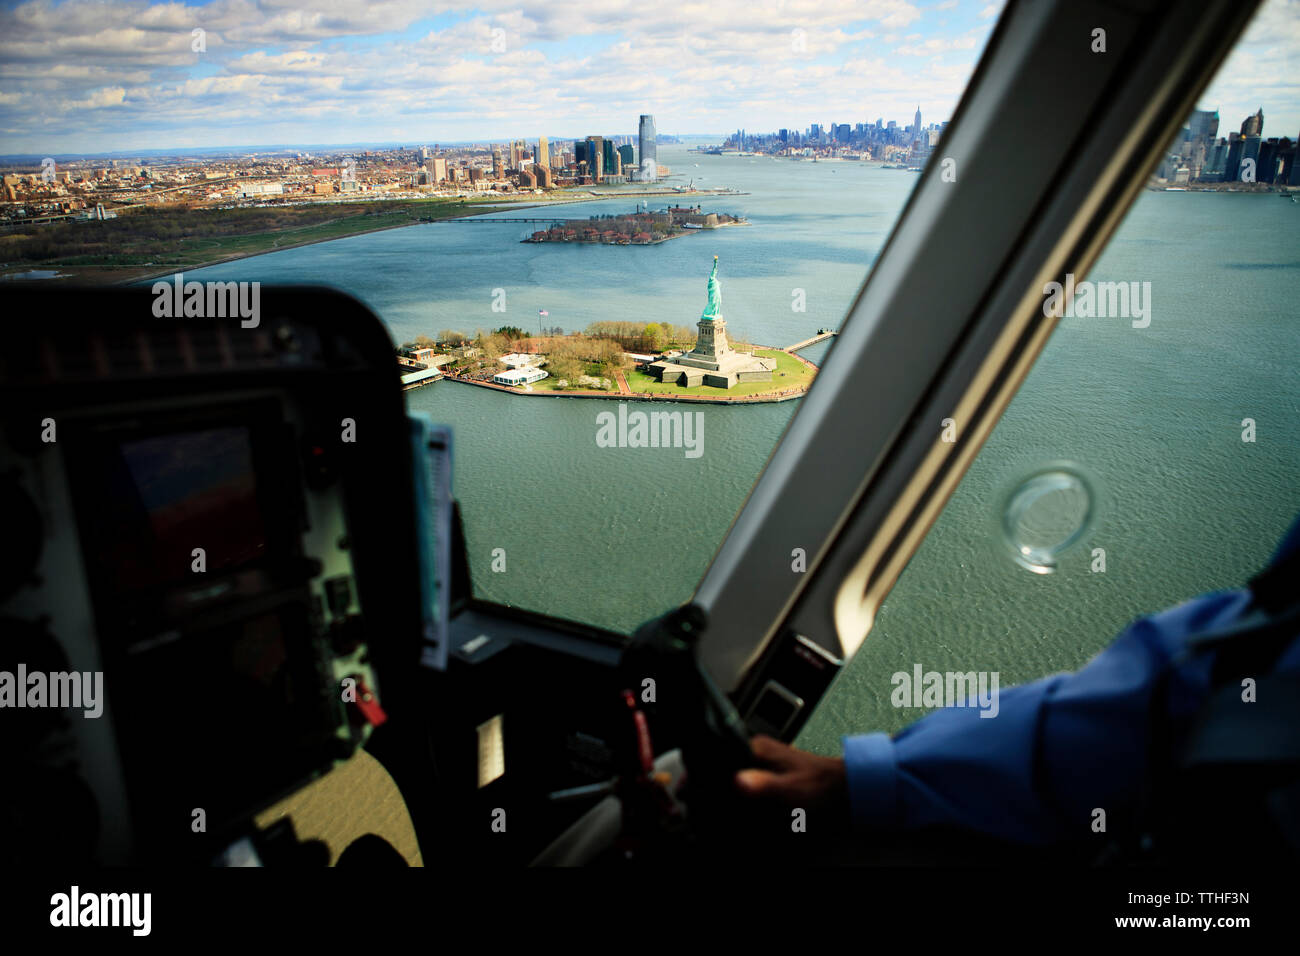 Freiheitsstatue inmitten Bay durch Hubschrauber Fenster gesehen Stockfoto